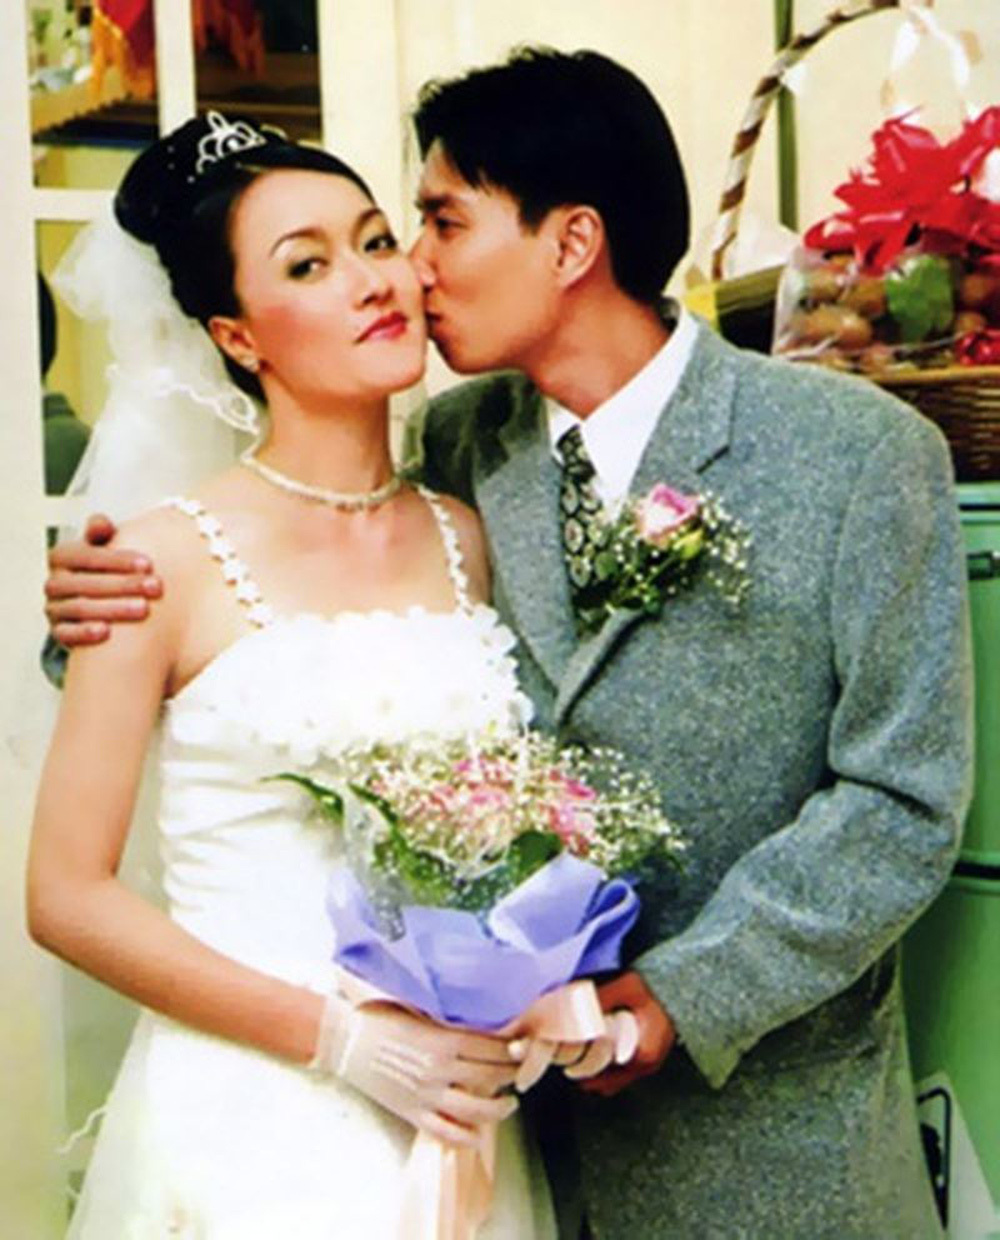  
Tấm hình cưới duy nhất được nữ danh hài tiết lộ. (Ảnh: FBNV) - Tin sao Viet - Tin tuc sao Viet - Scandal sao Viet - Tin tuc cua Sao - Tin cua Sao